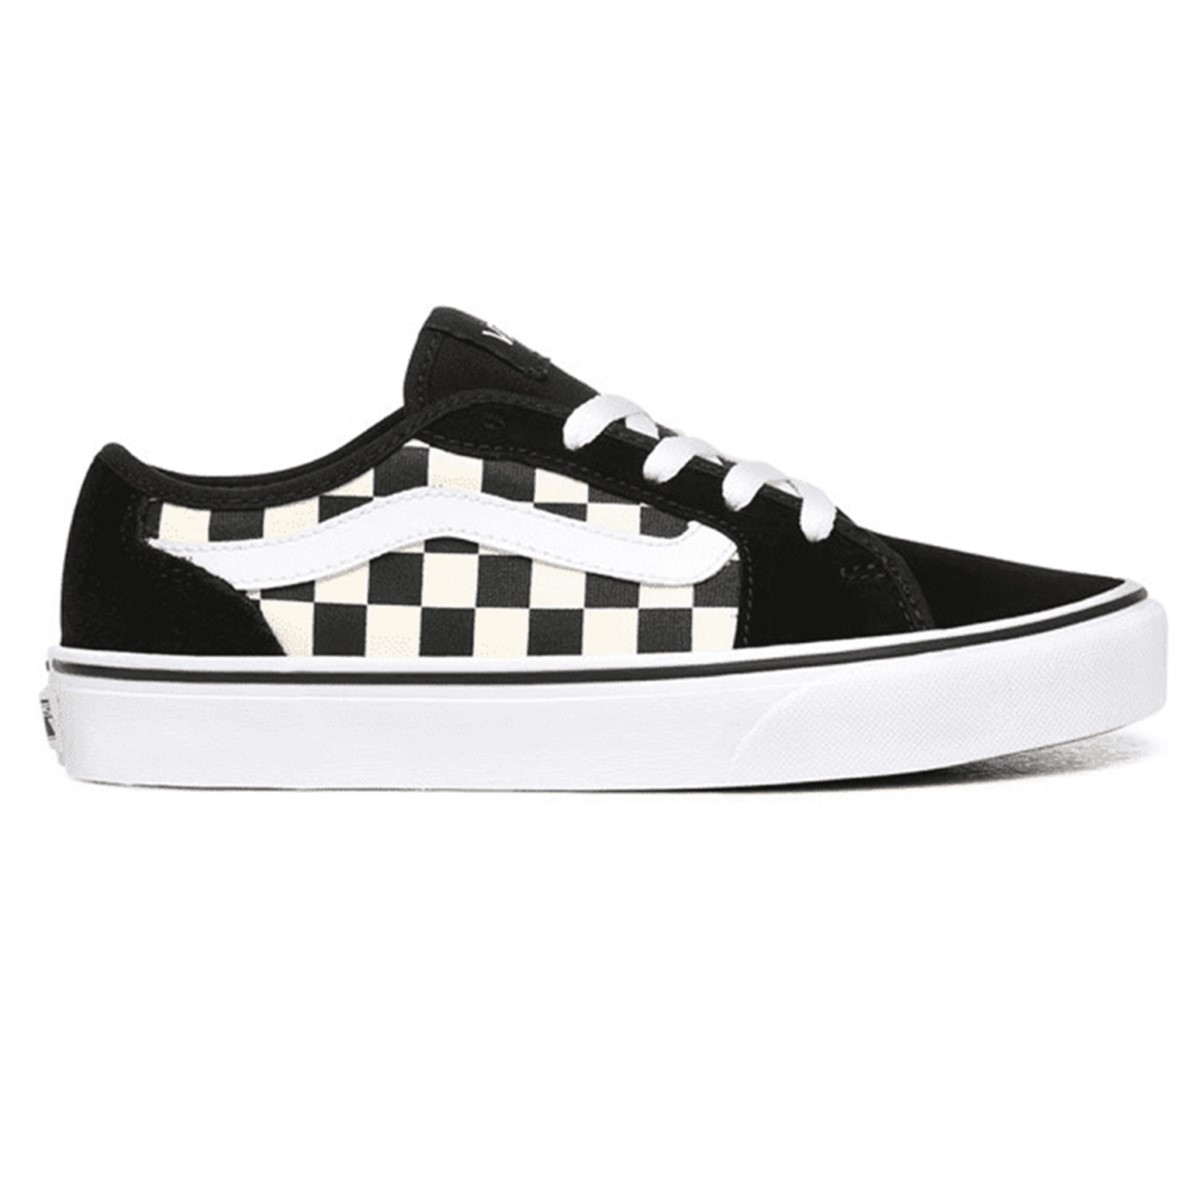 Vans Kadın Ayakkabı VN0A45NM5GX1 (Checkerboard) Black/White